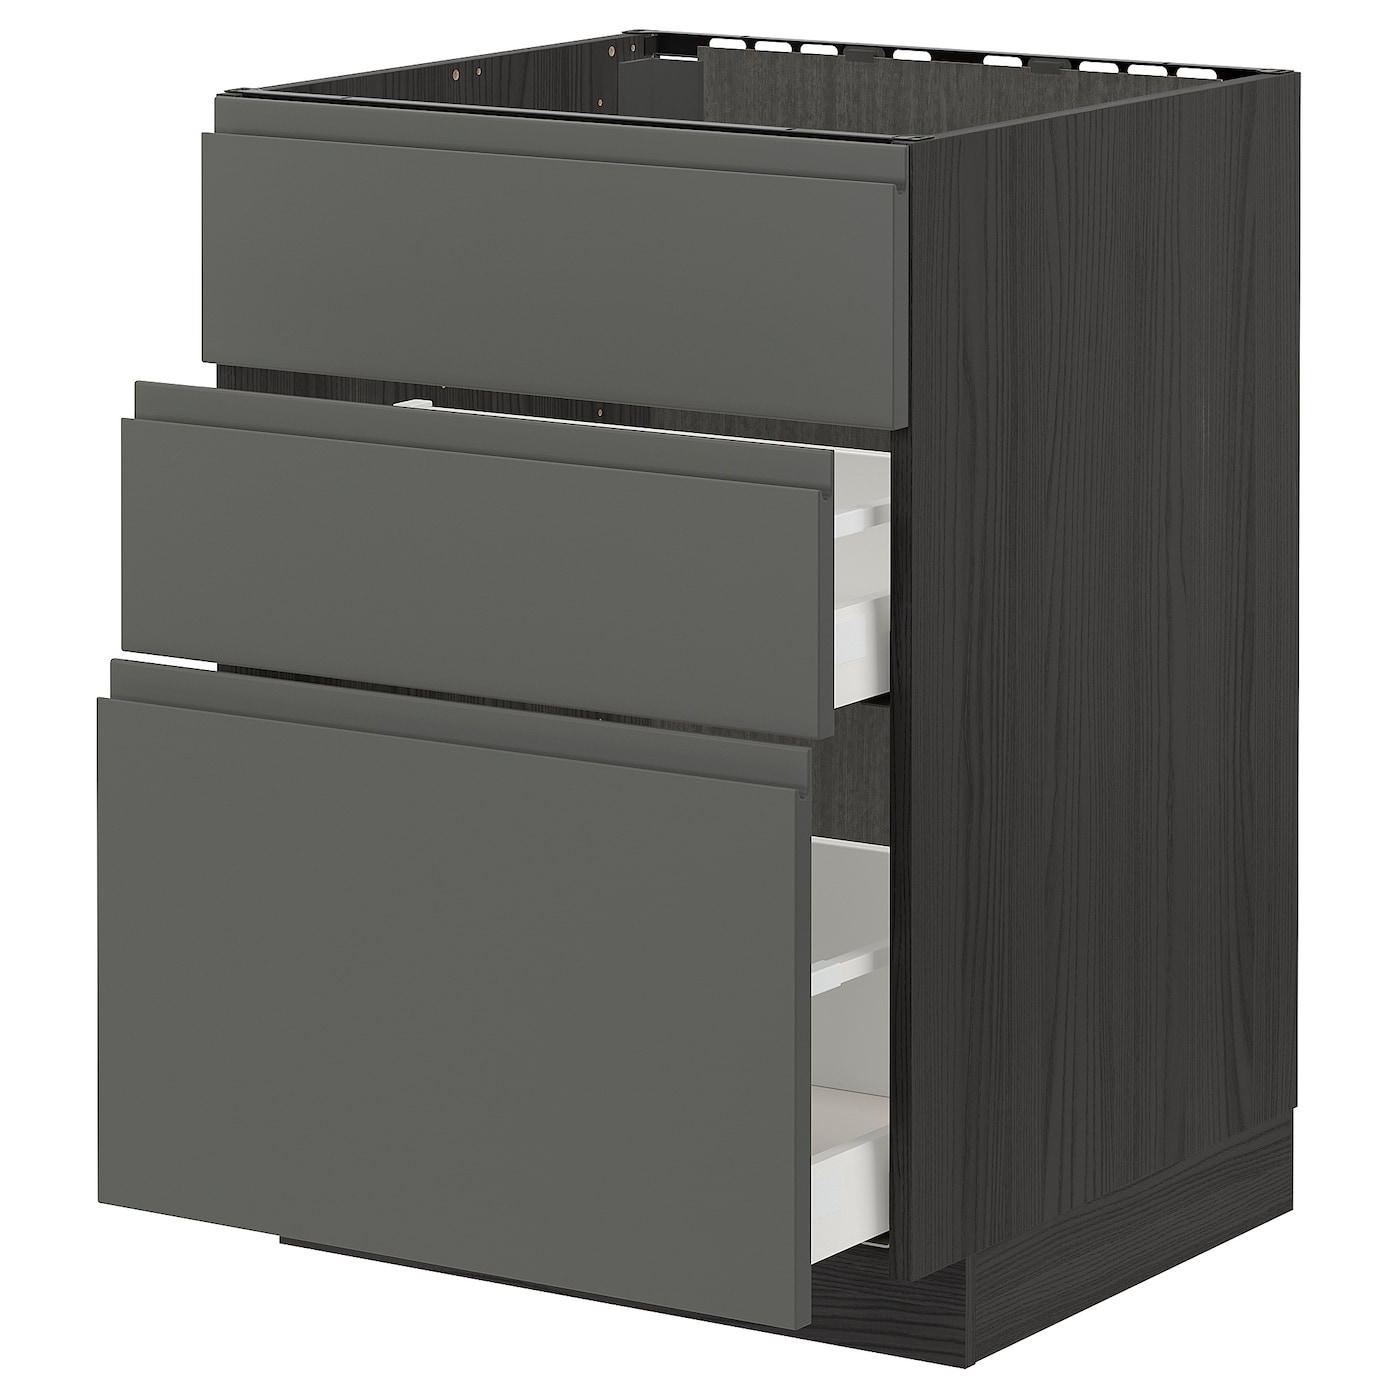 Напольный кухонный шкаф  - IKEA METOD MAXIMERA, 88x62x60см, черный/темно-серый, МЕТОД МАКСИМЕРА ИКЕА